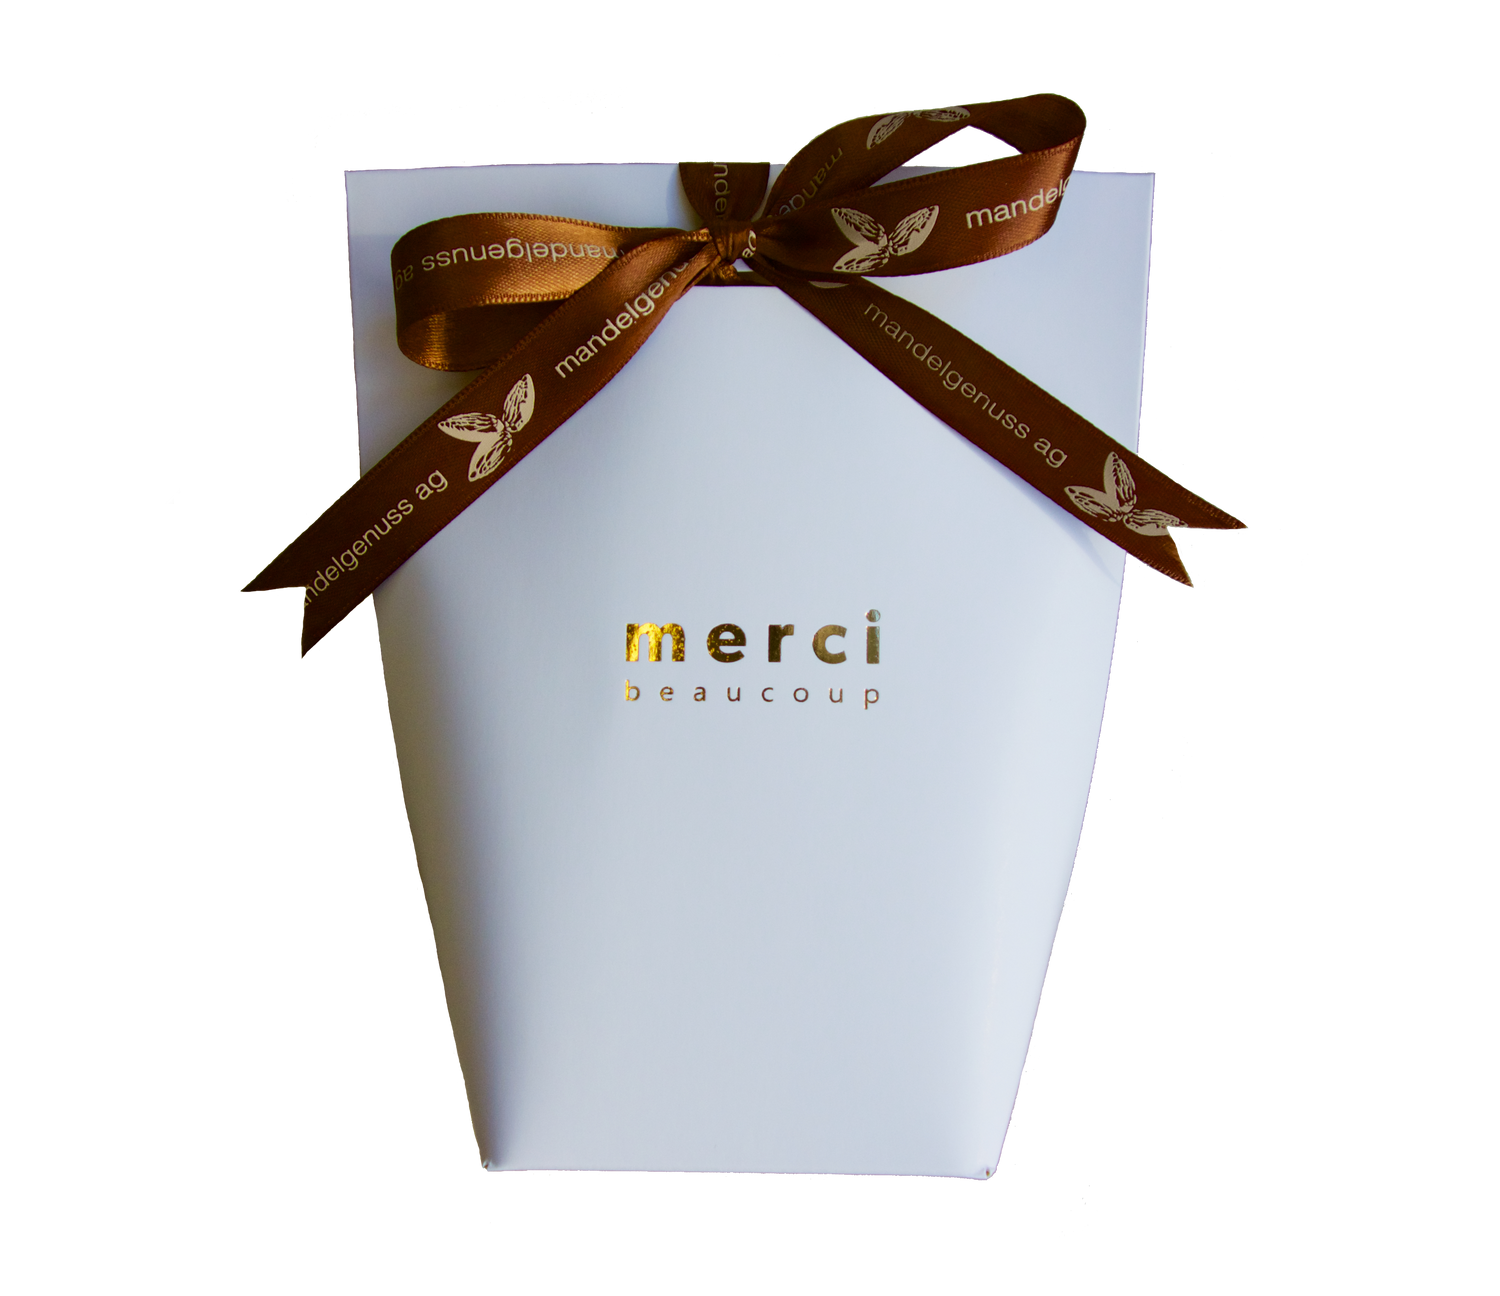 Edle Geschenktüte "Merci" (Weiss) - Kalifornische Mandeln, ein Genuss | mandelgenuss 